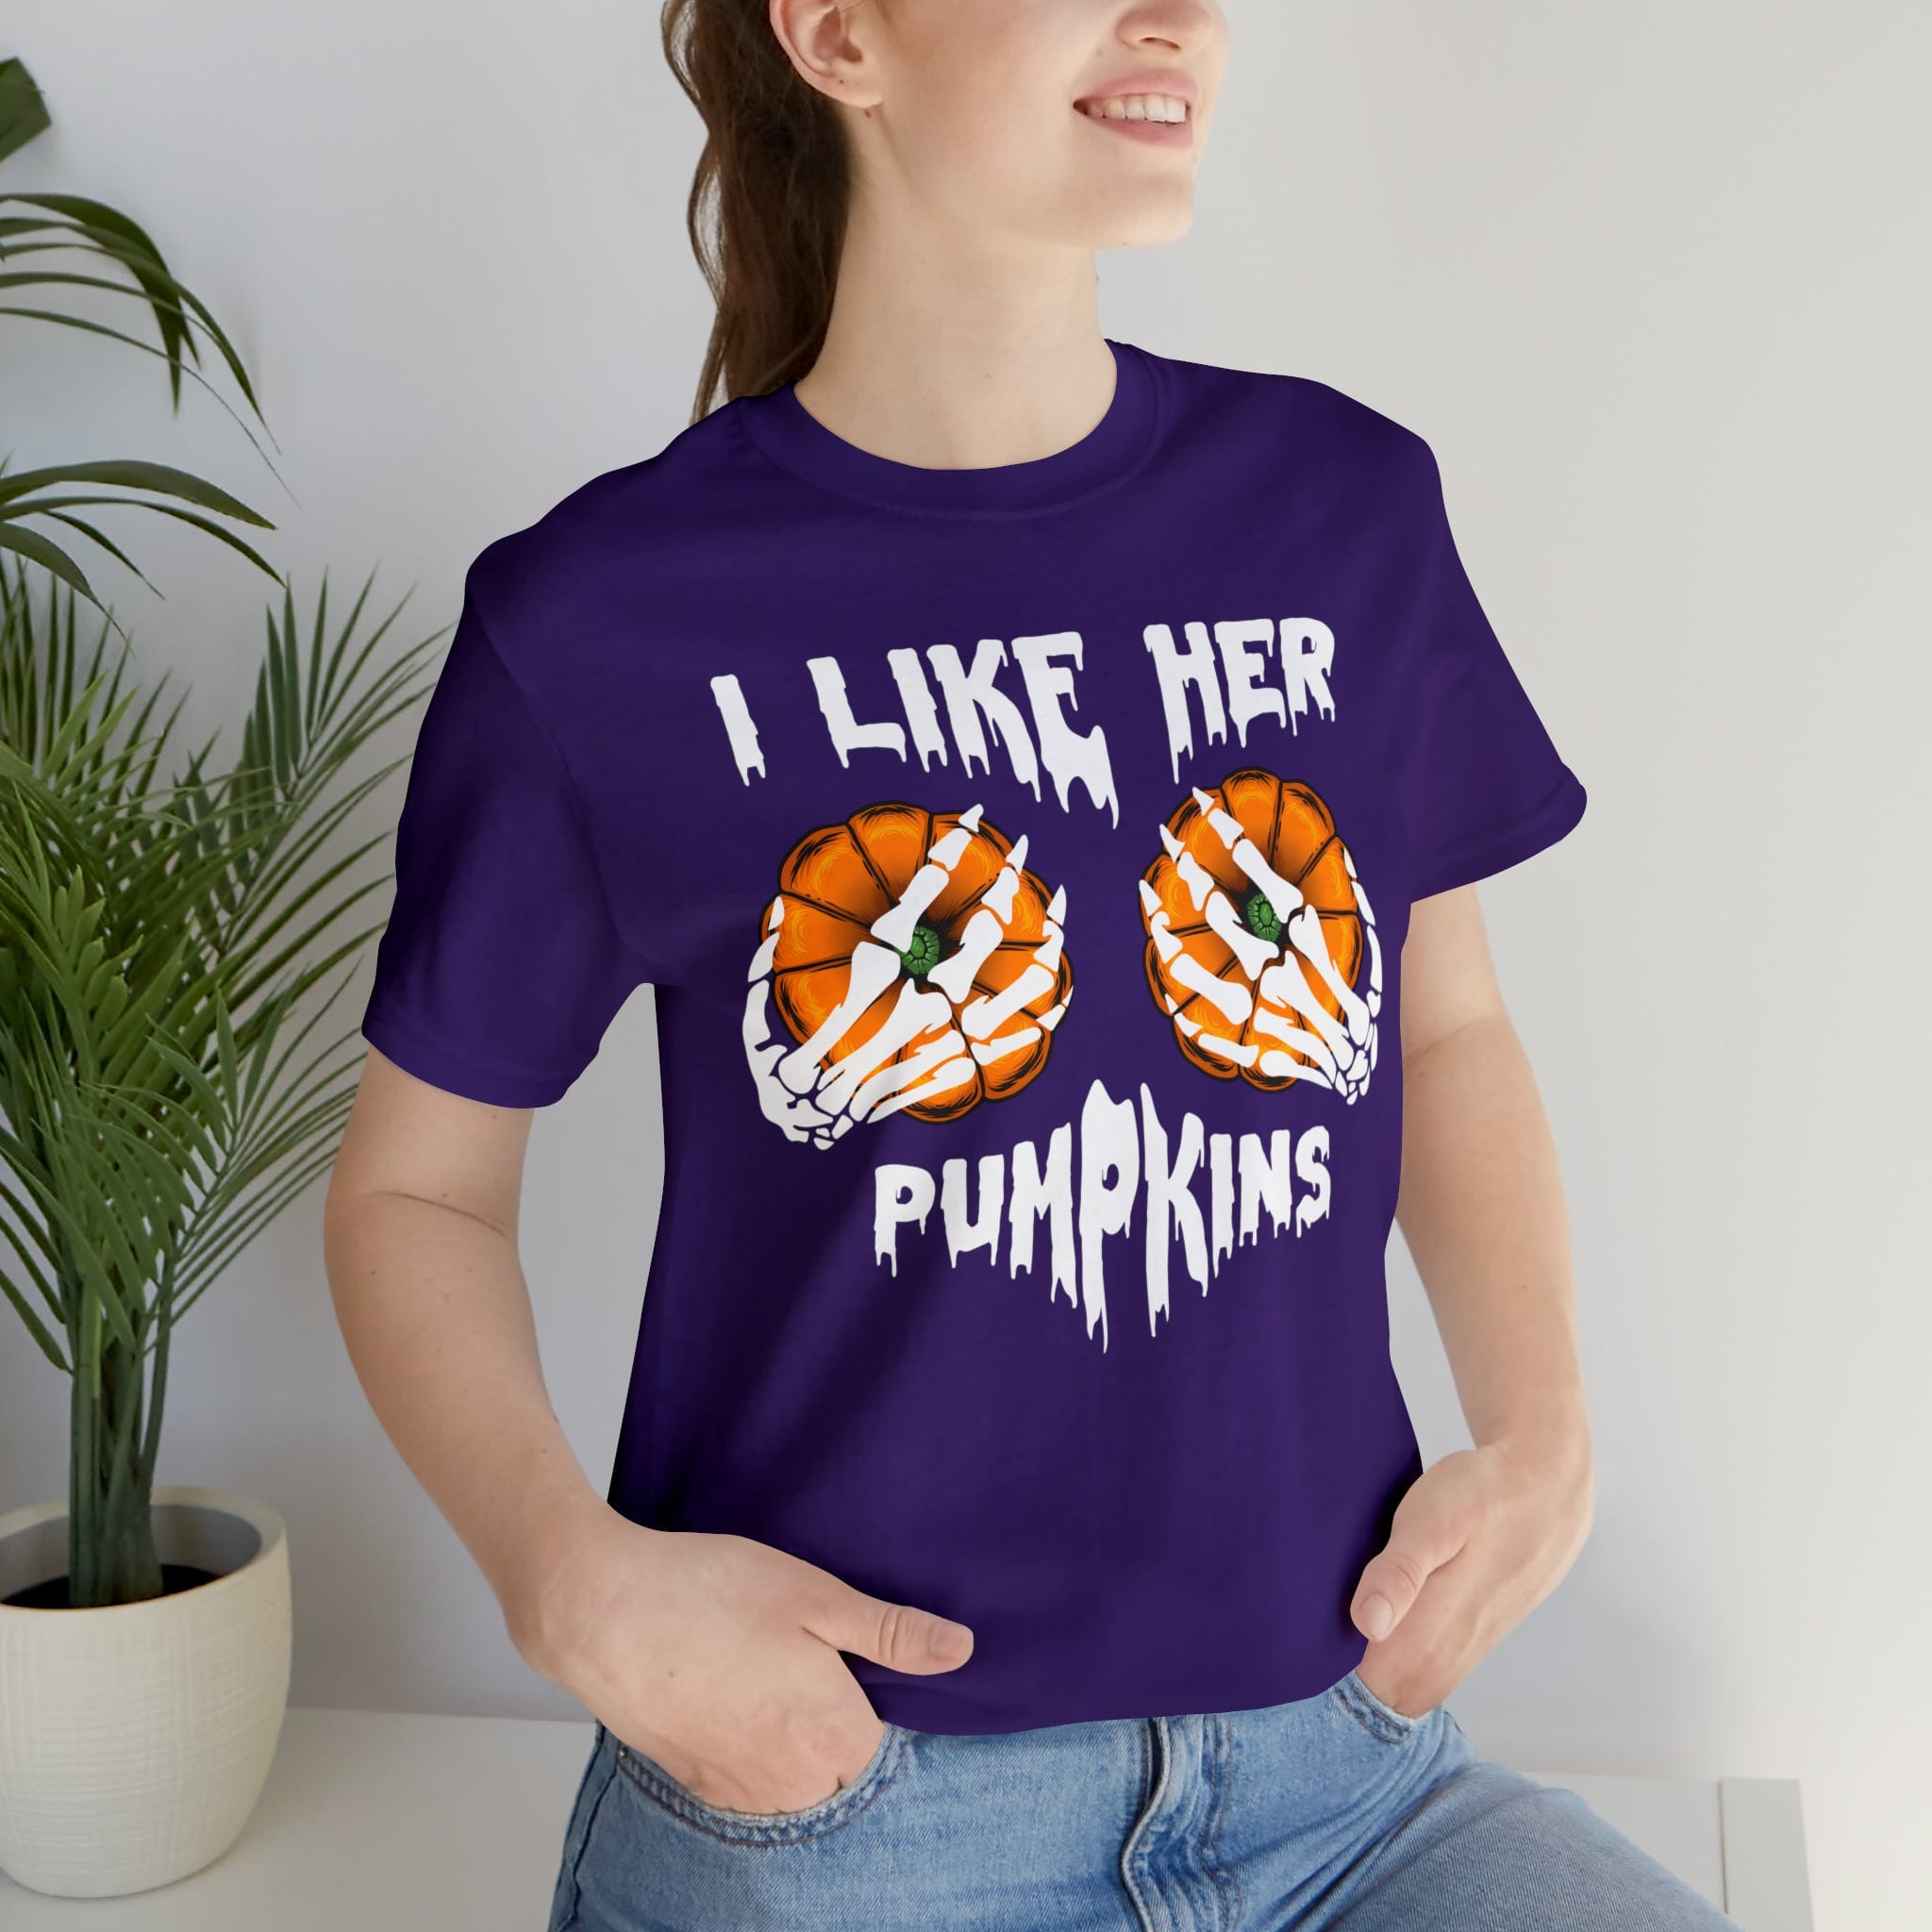 I Like her pumpkins